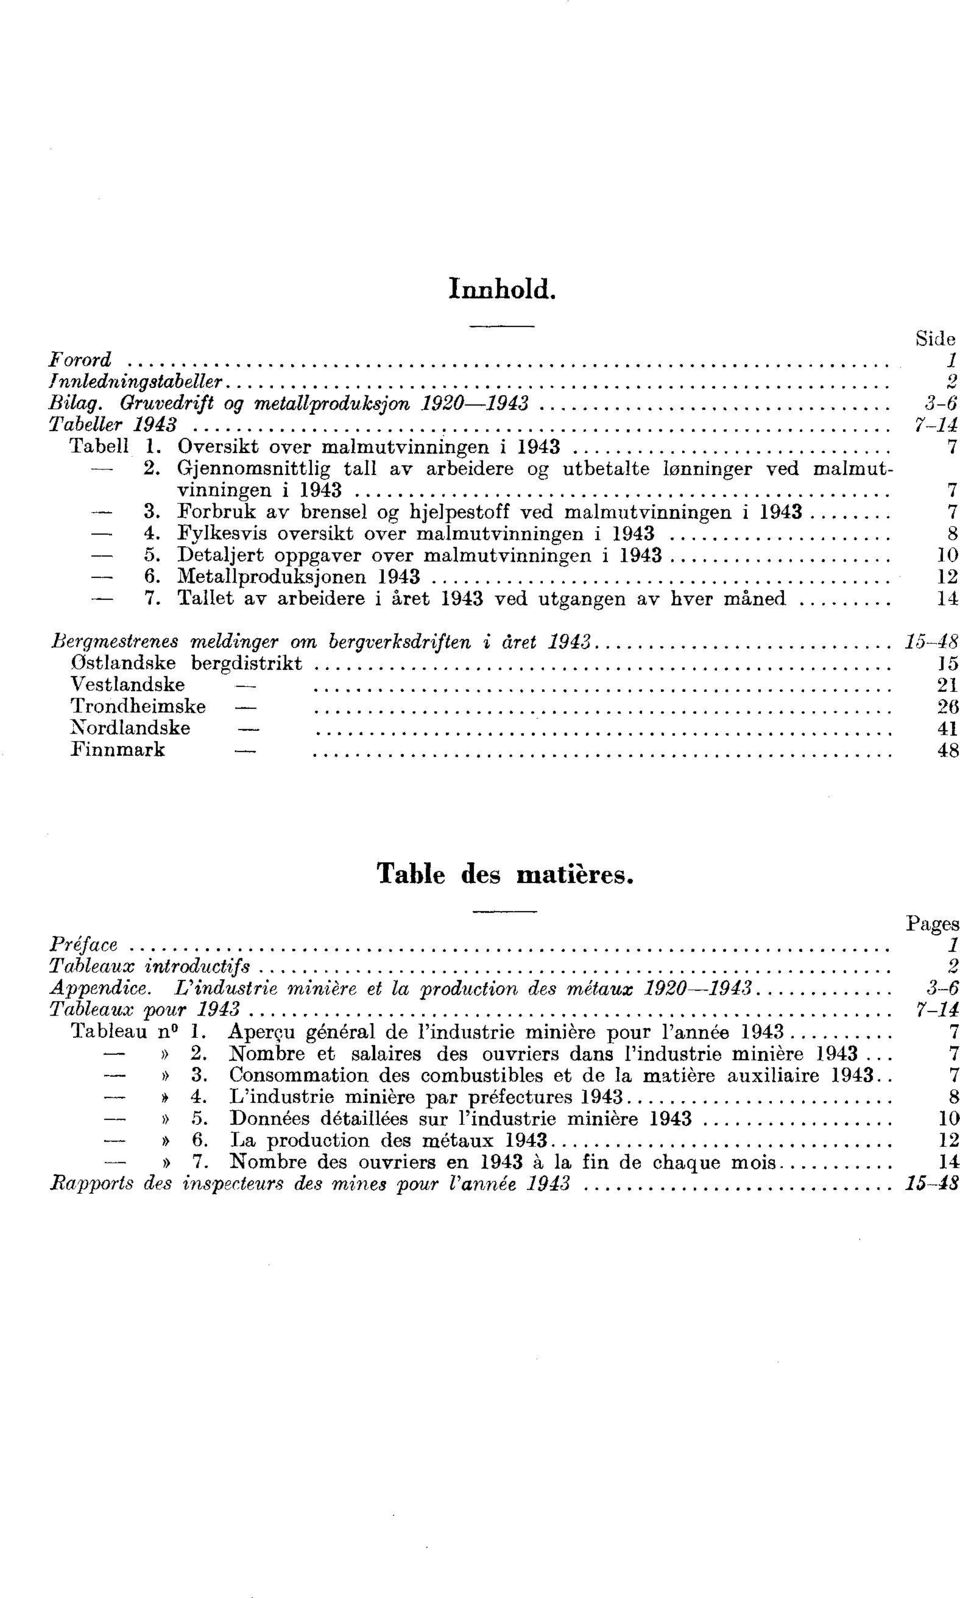 Fylkesvis oversikt over malmutvinningen i 1943 8 5. Detaljert oppgaver over malmutvinningen i 1943 10 6. Metallproduksjonen 1943 12 7.